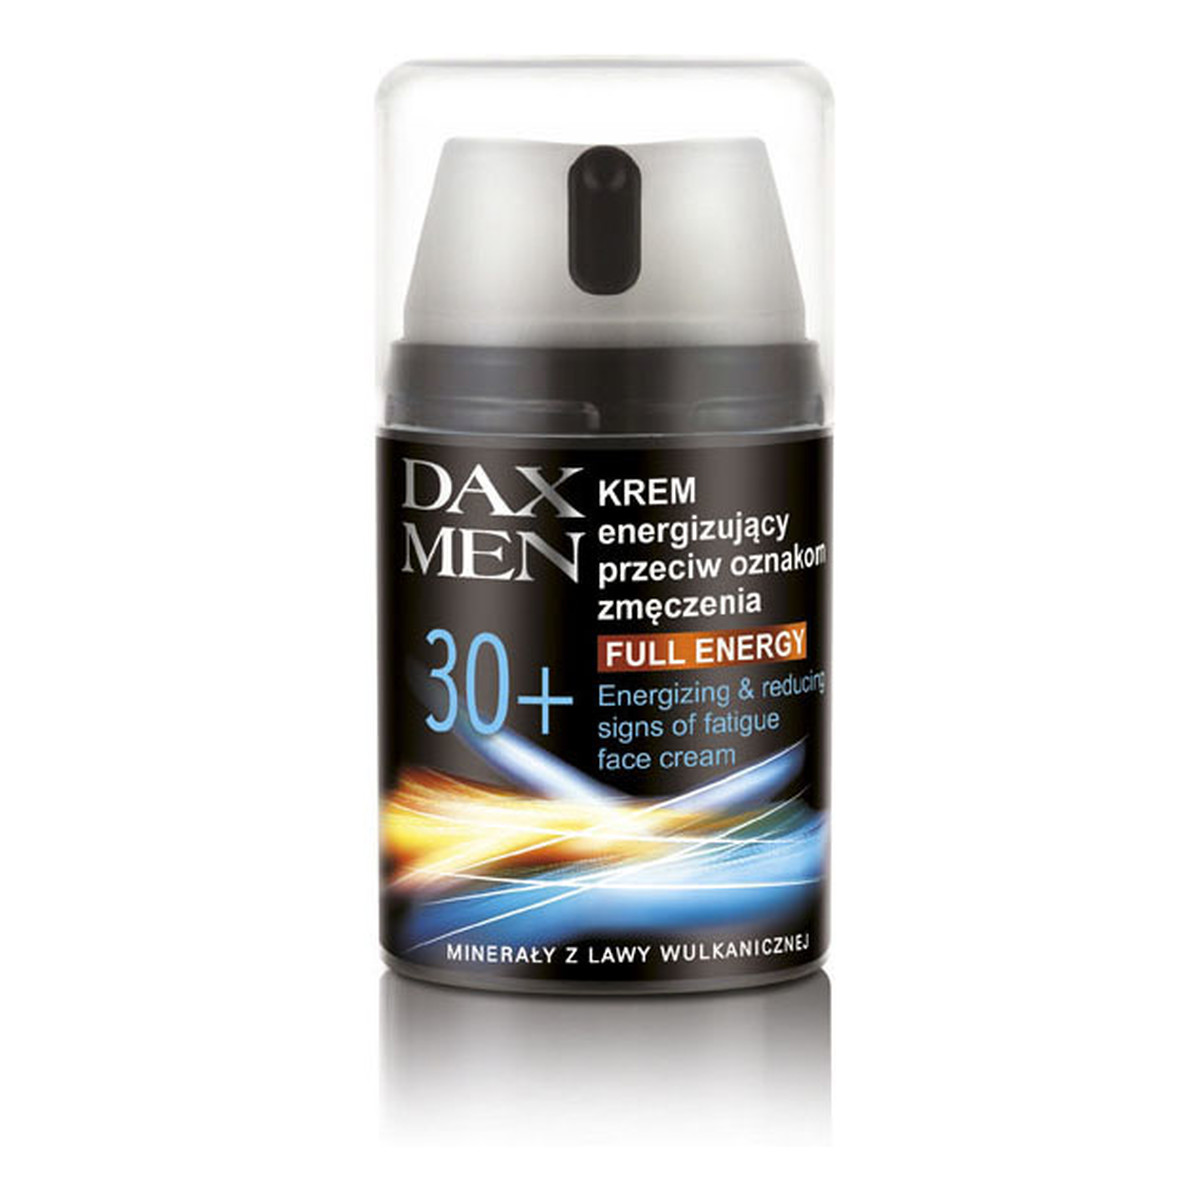 Dax Men Krem Dla Mężczyzn Energizujący Przeciw Oznakom Zmęczenia 30+ Full Energy 50ml